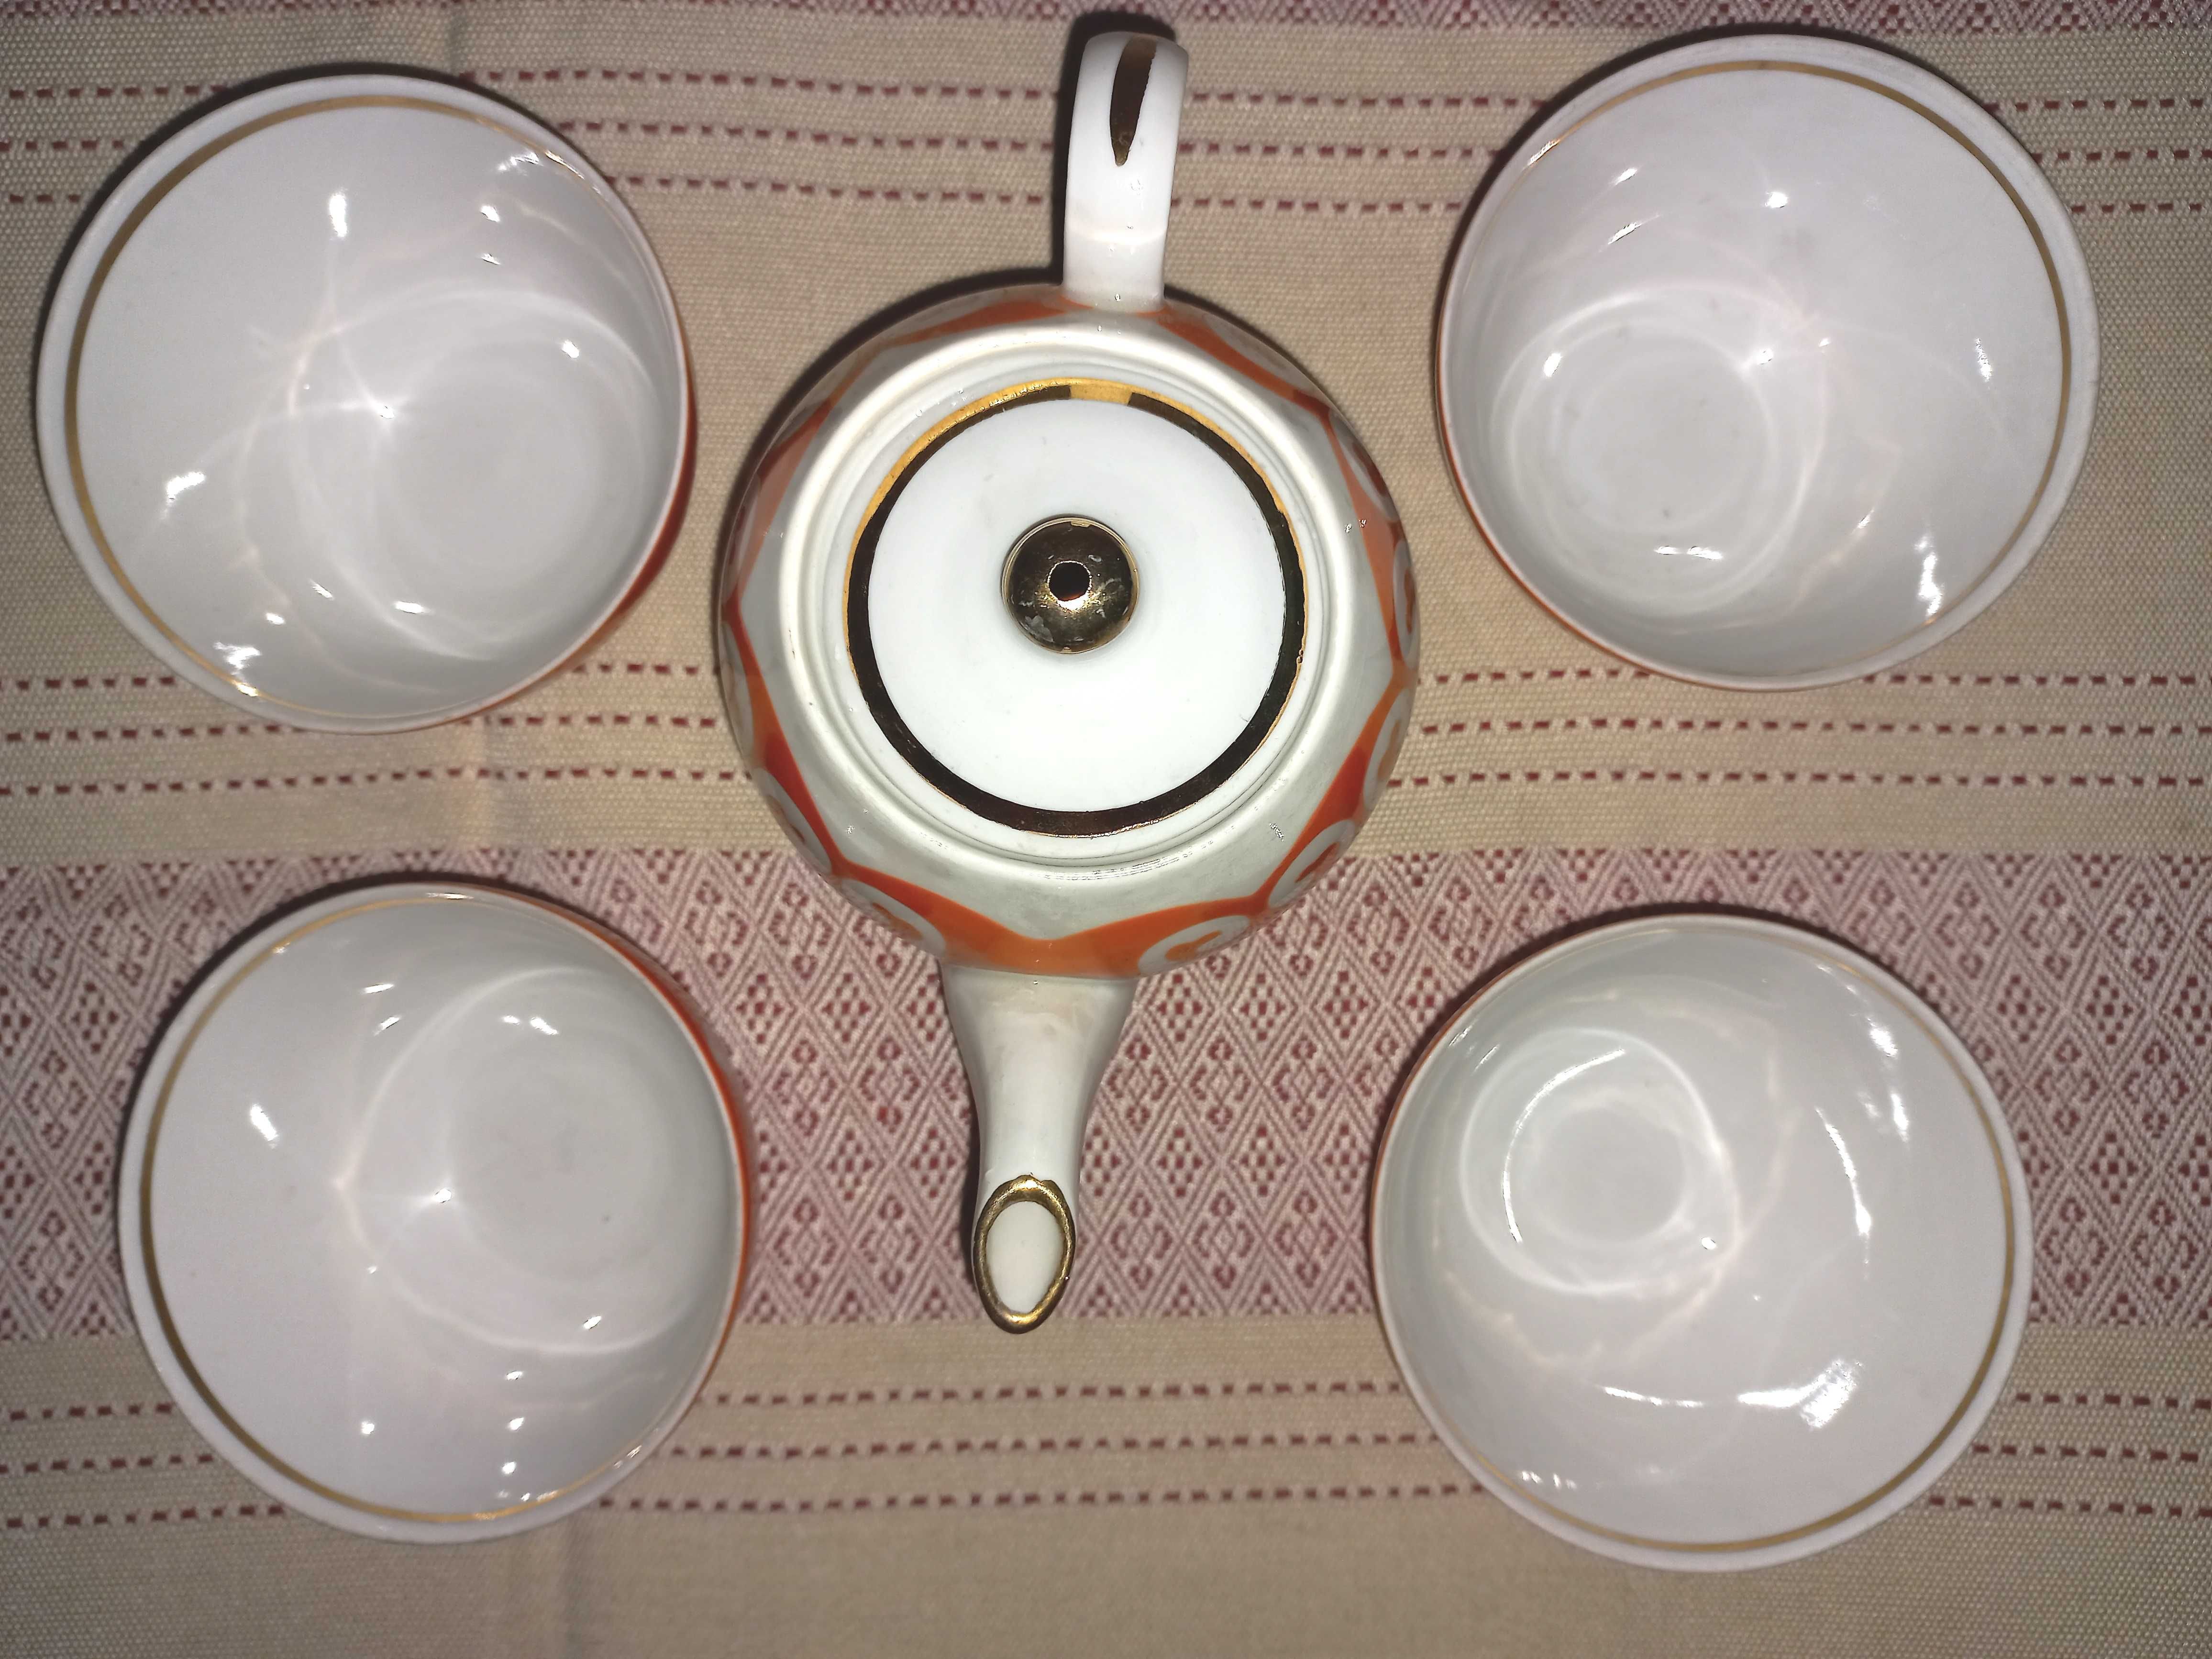 Винтажный новый чайный набор с чайником в восточным стиле из СССР